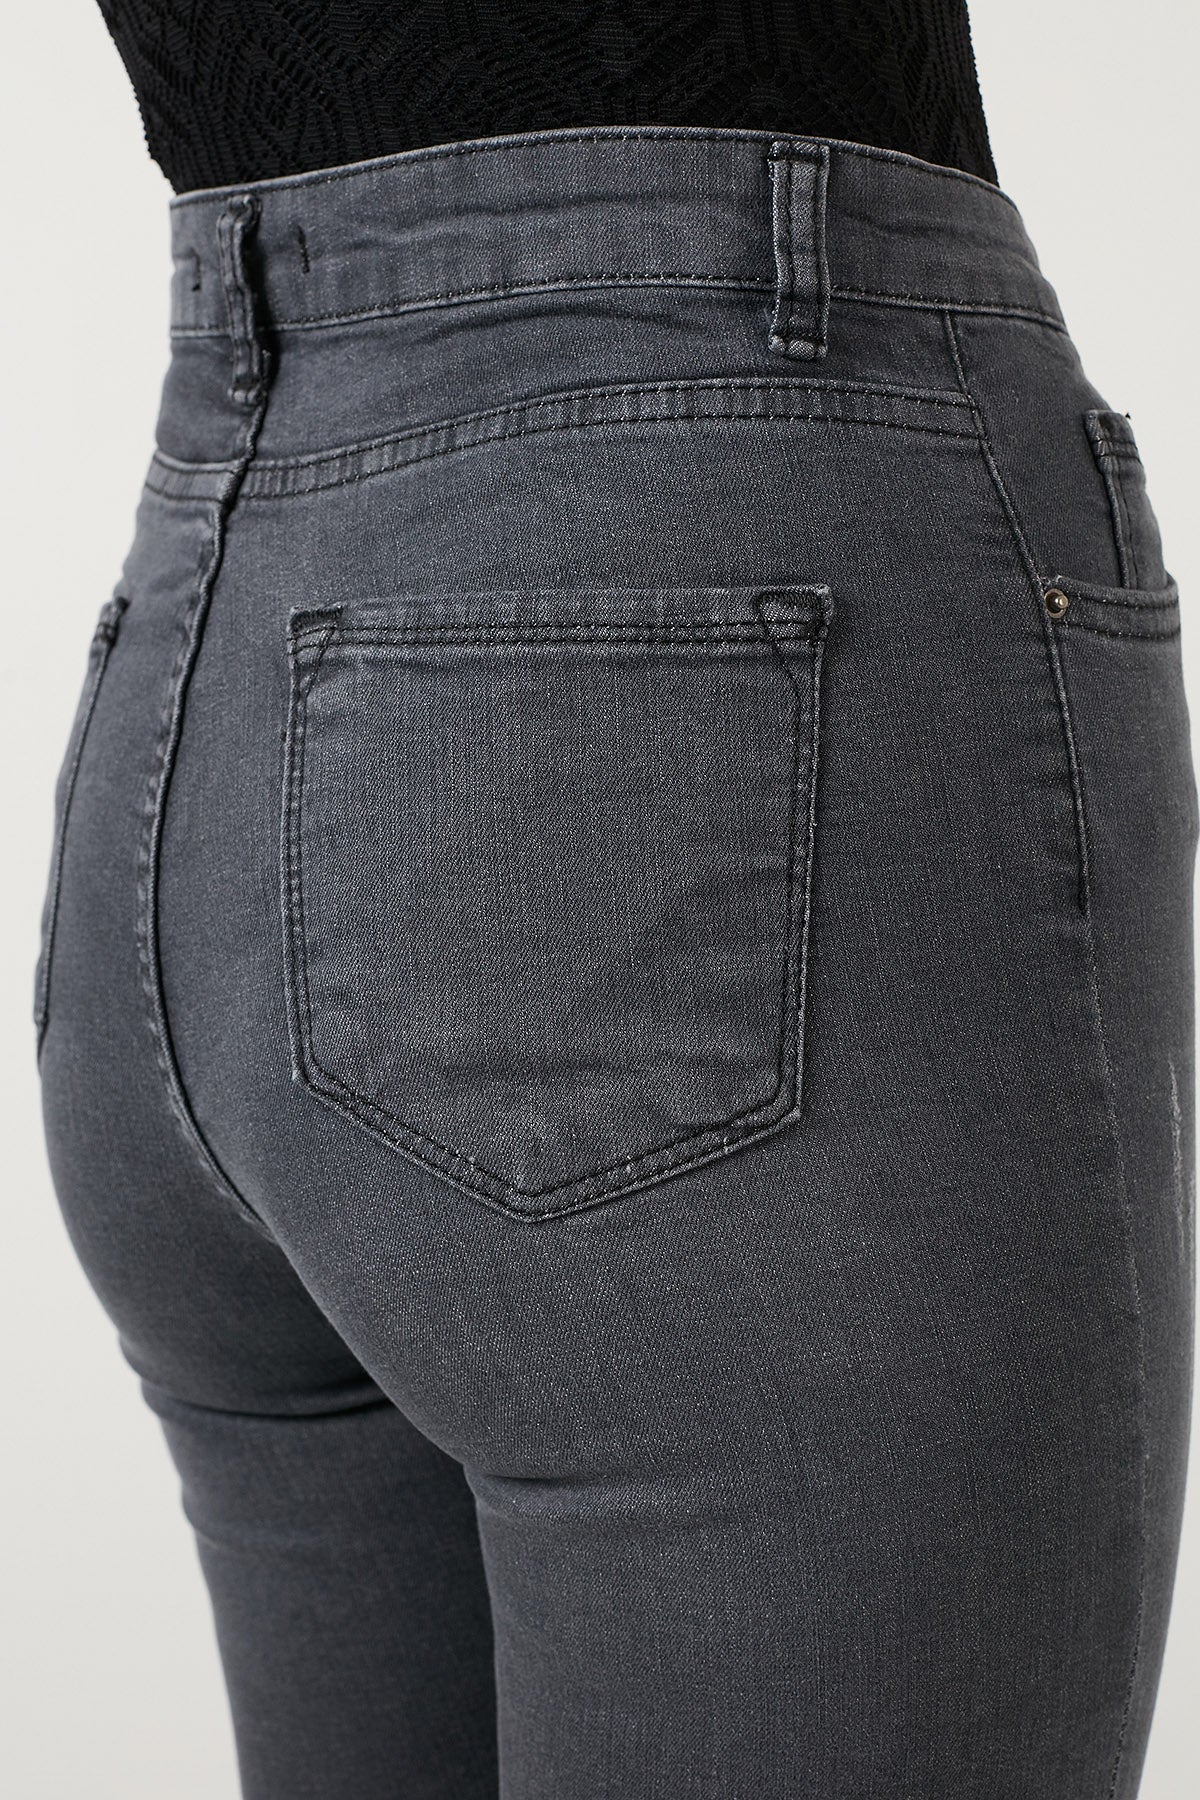 Lela Yüksek Bel Skinny Dar Paça Pamuklu Jeans Bayan Kot Pantolon 58713259 GRİ